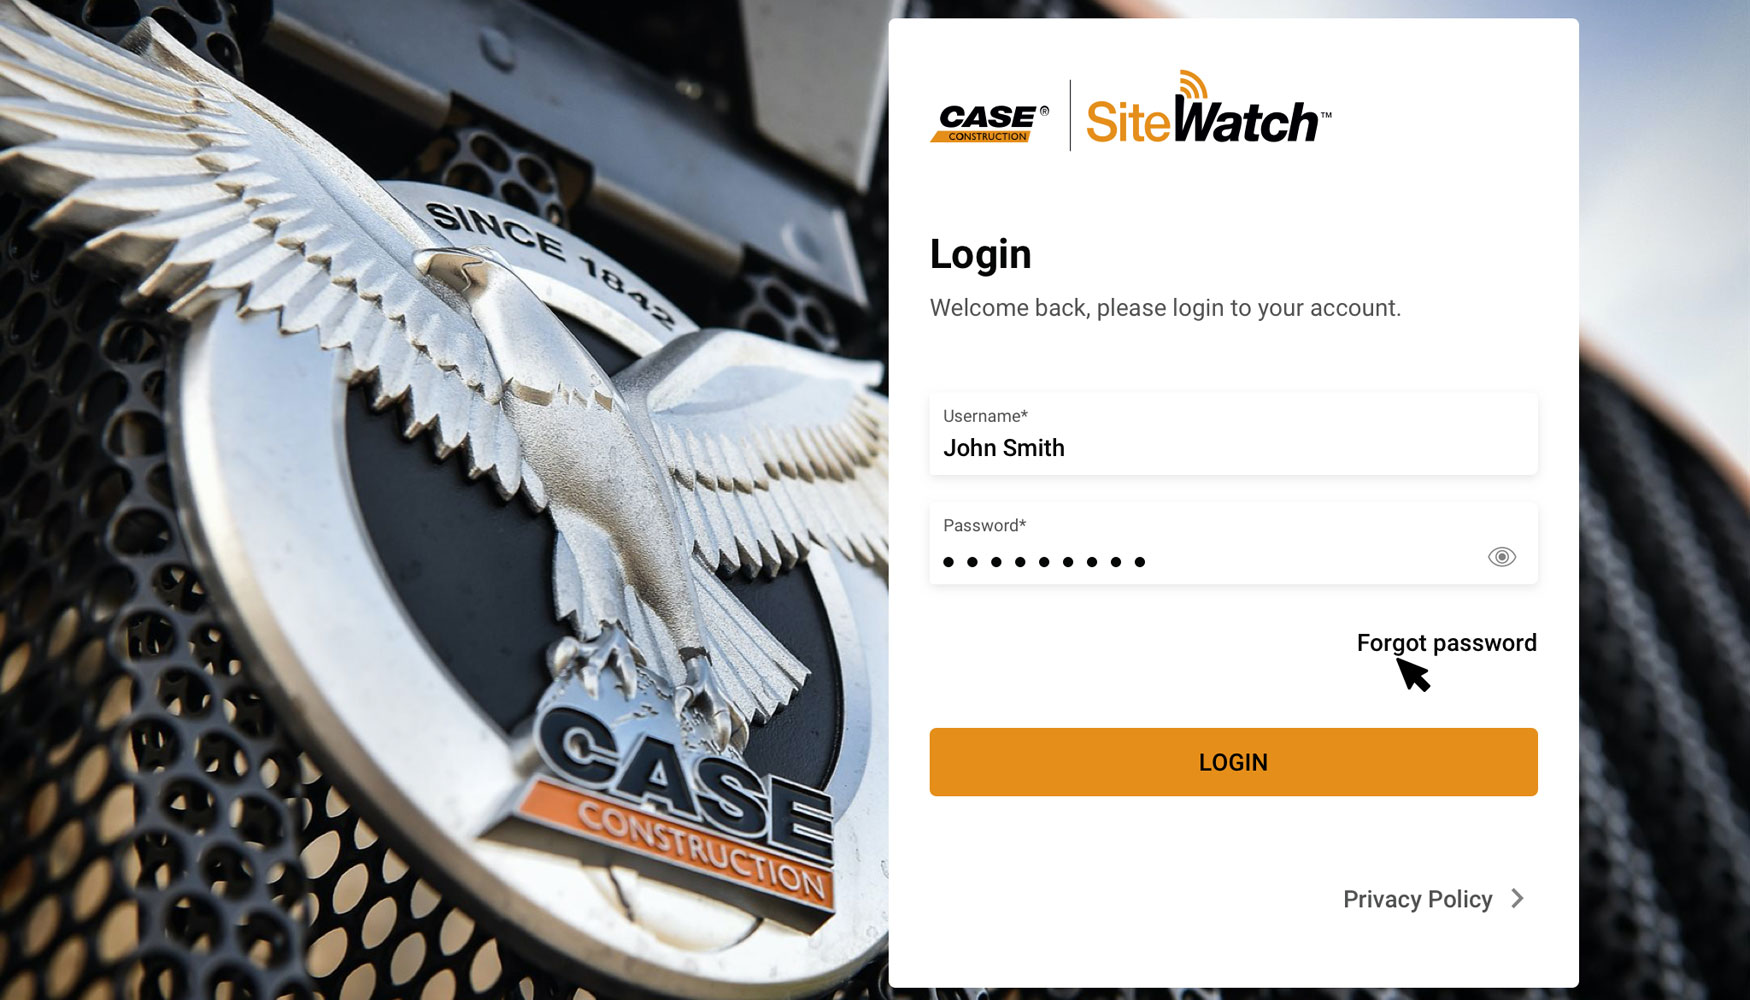 Case ha renovado el diseo de su plataforma telemtica SiteWatch